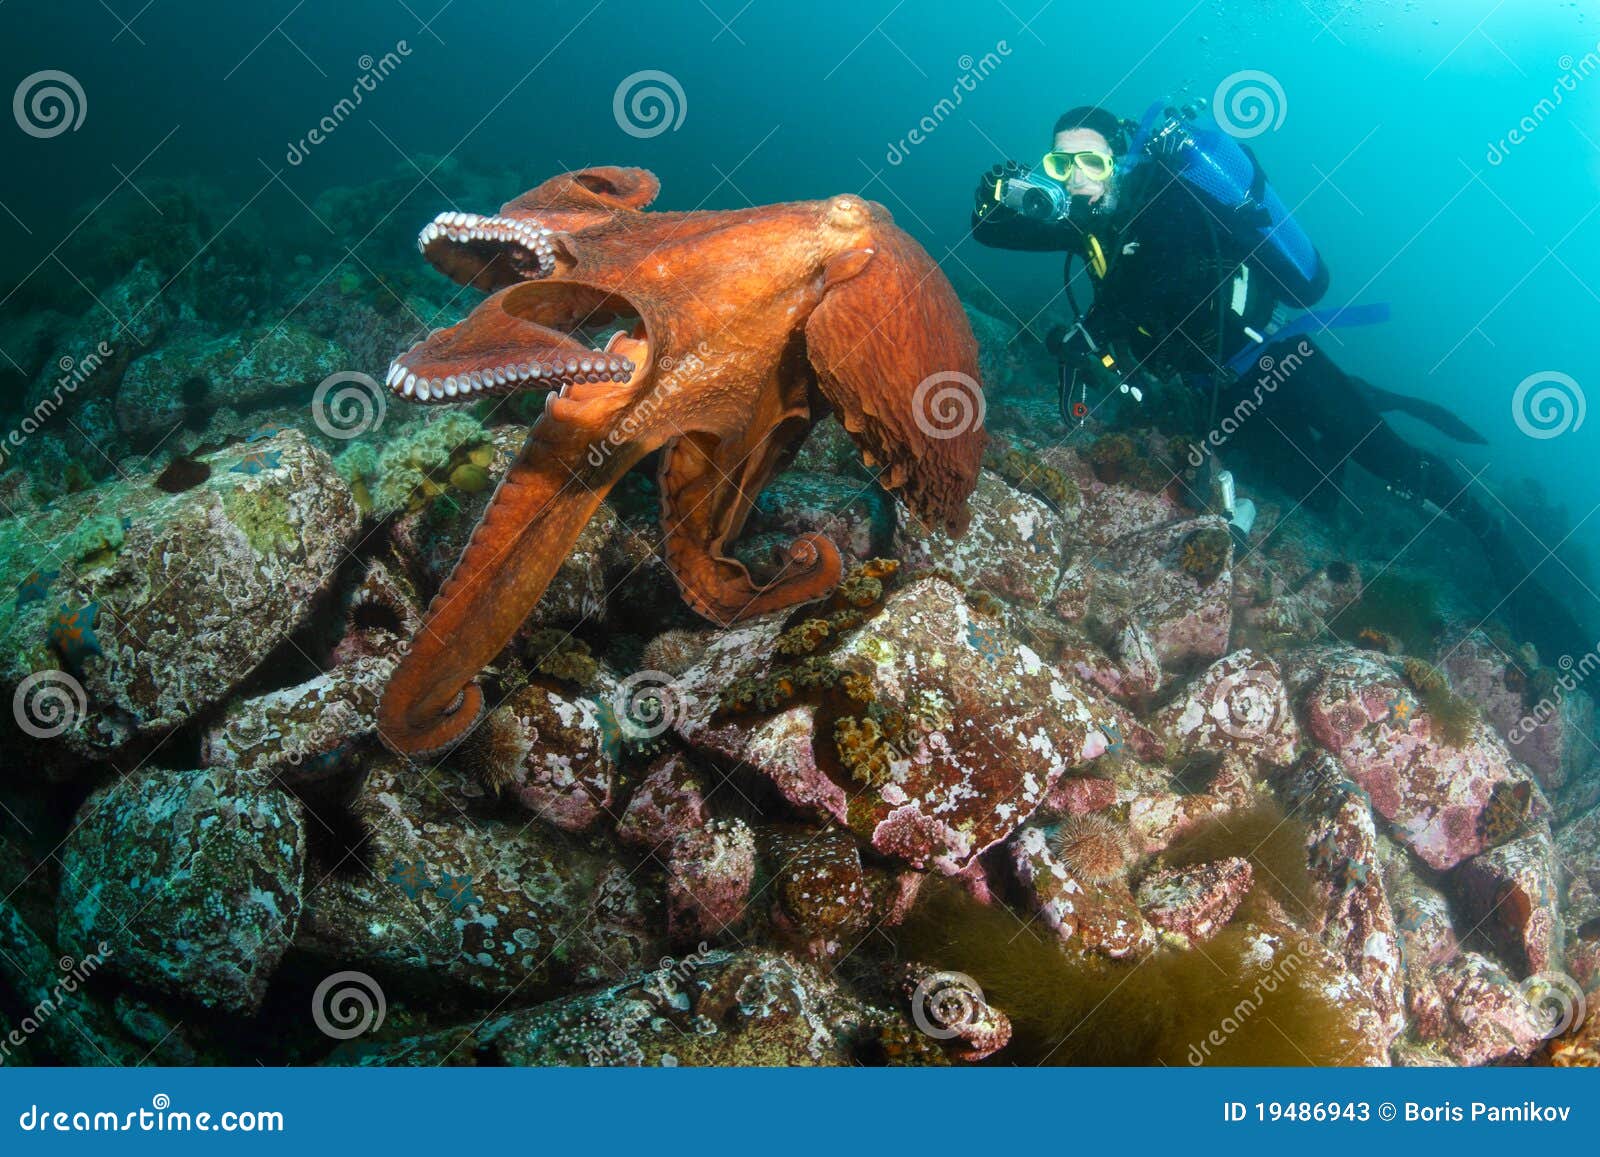 巨型章鱼亲密接触潜水员 罕见画面网路热传